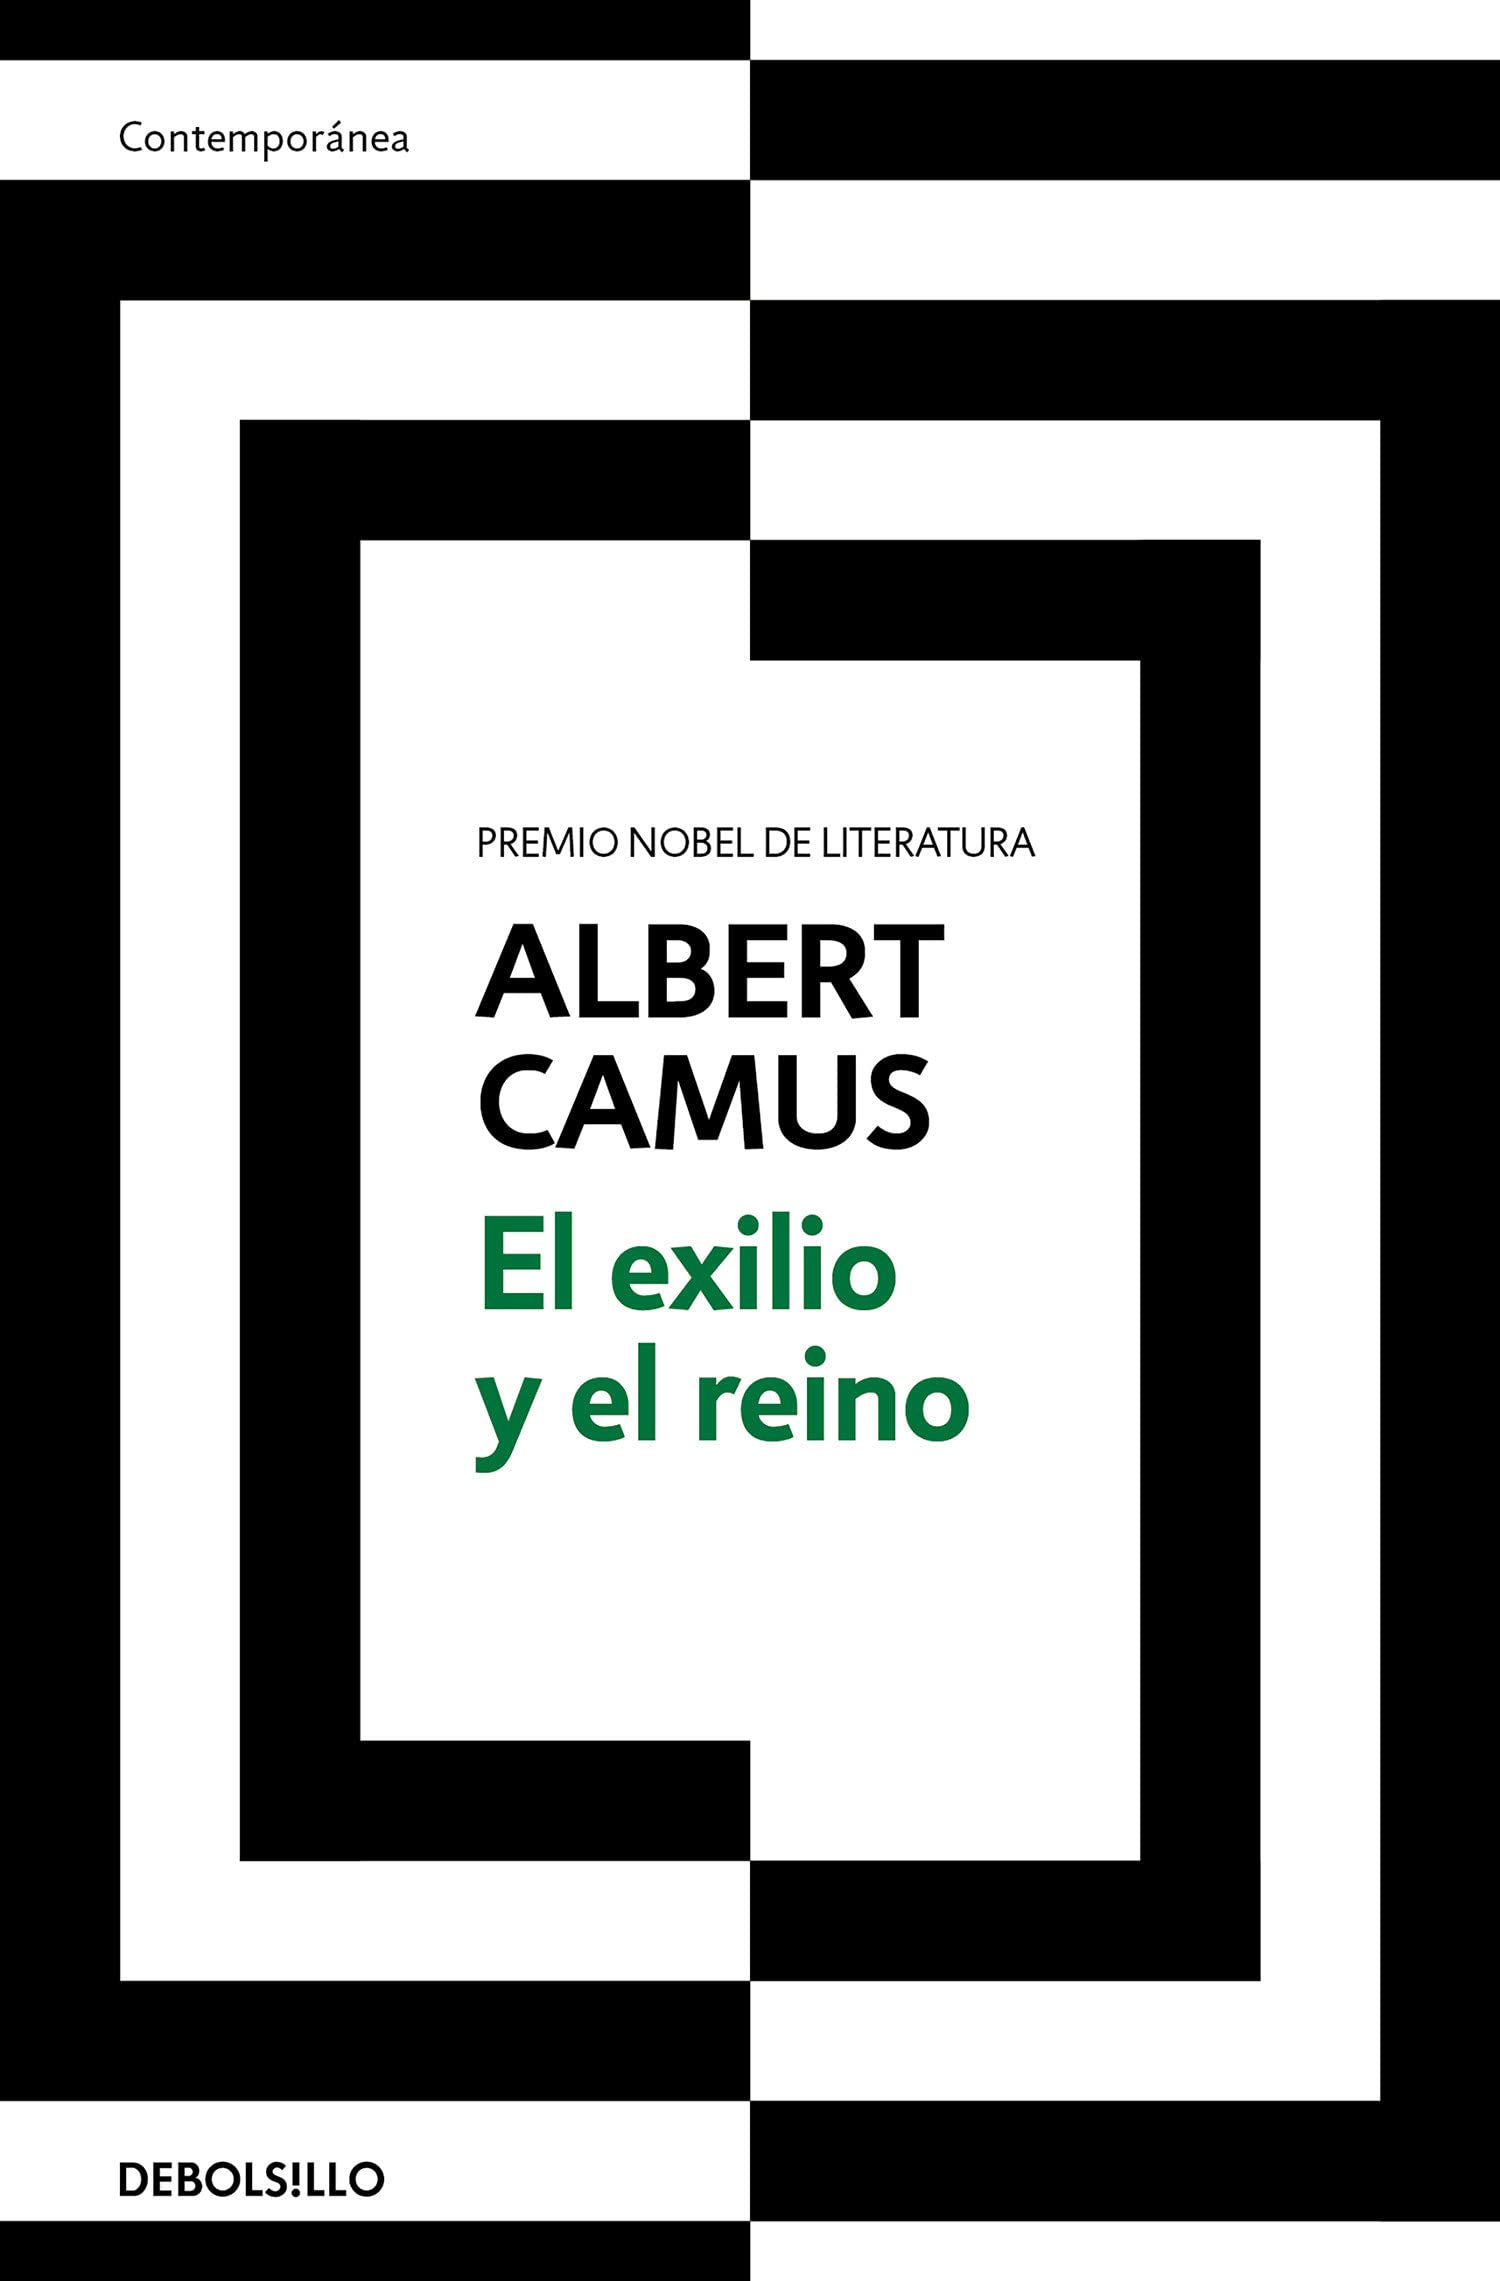 Zenda recomienda: El exilio y el reino, de Albert Camus